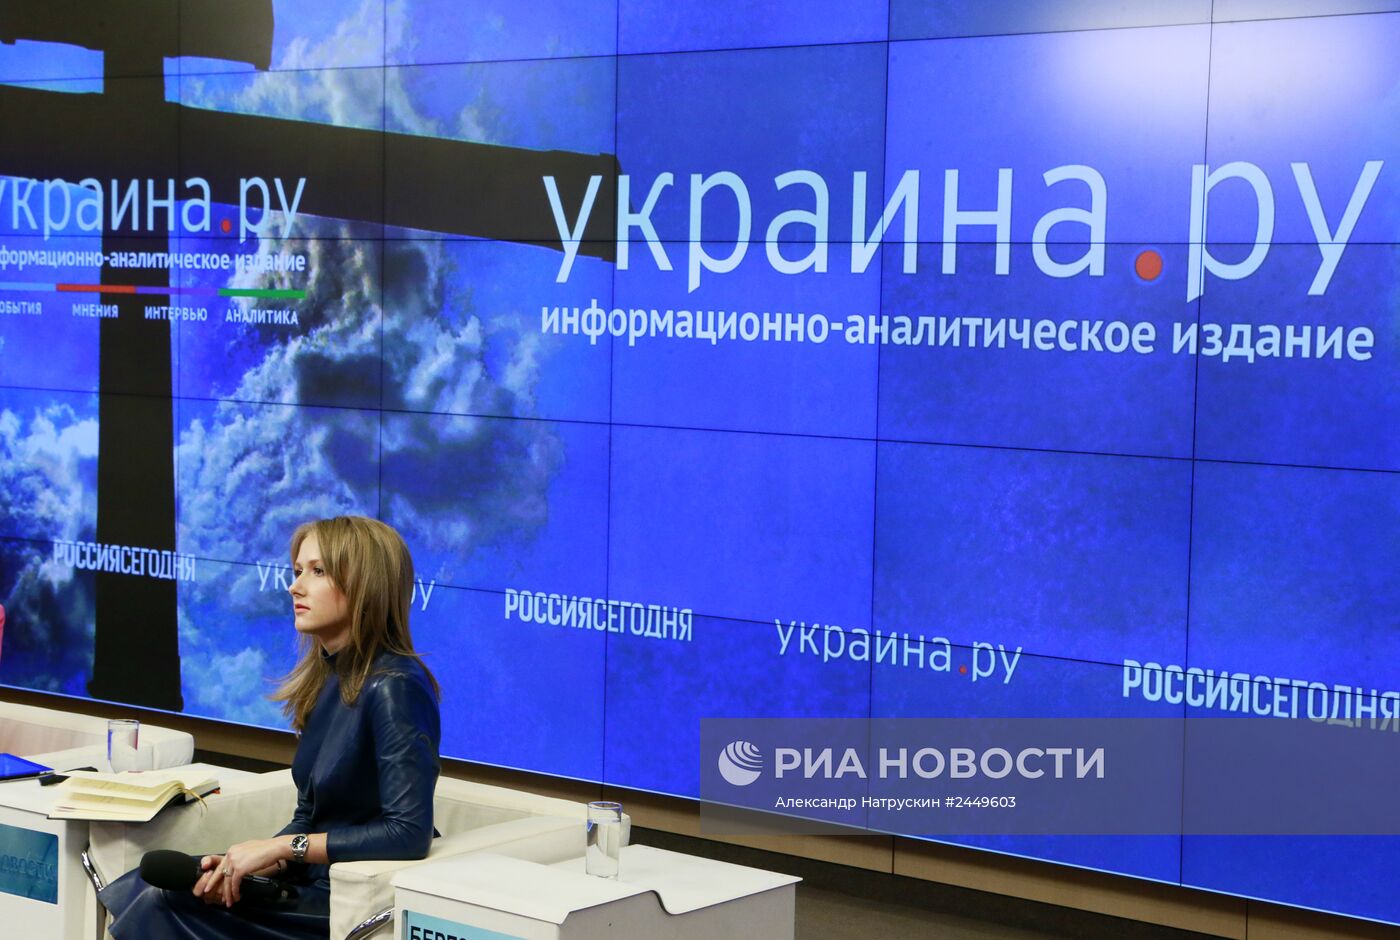 Презентация информационно-аналитического издания "Украина.РУ"